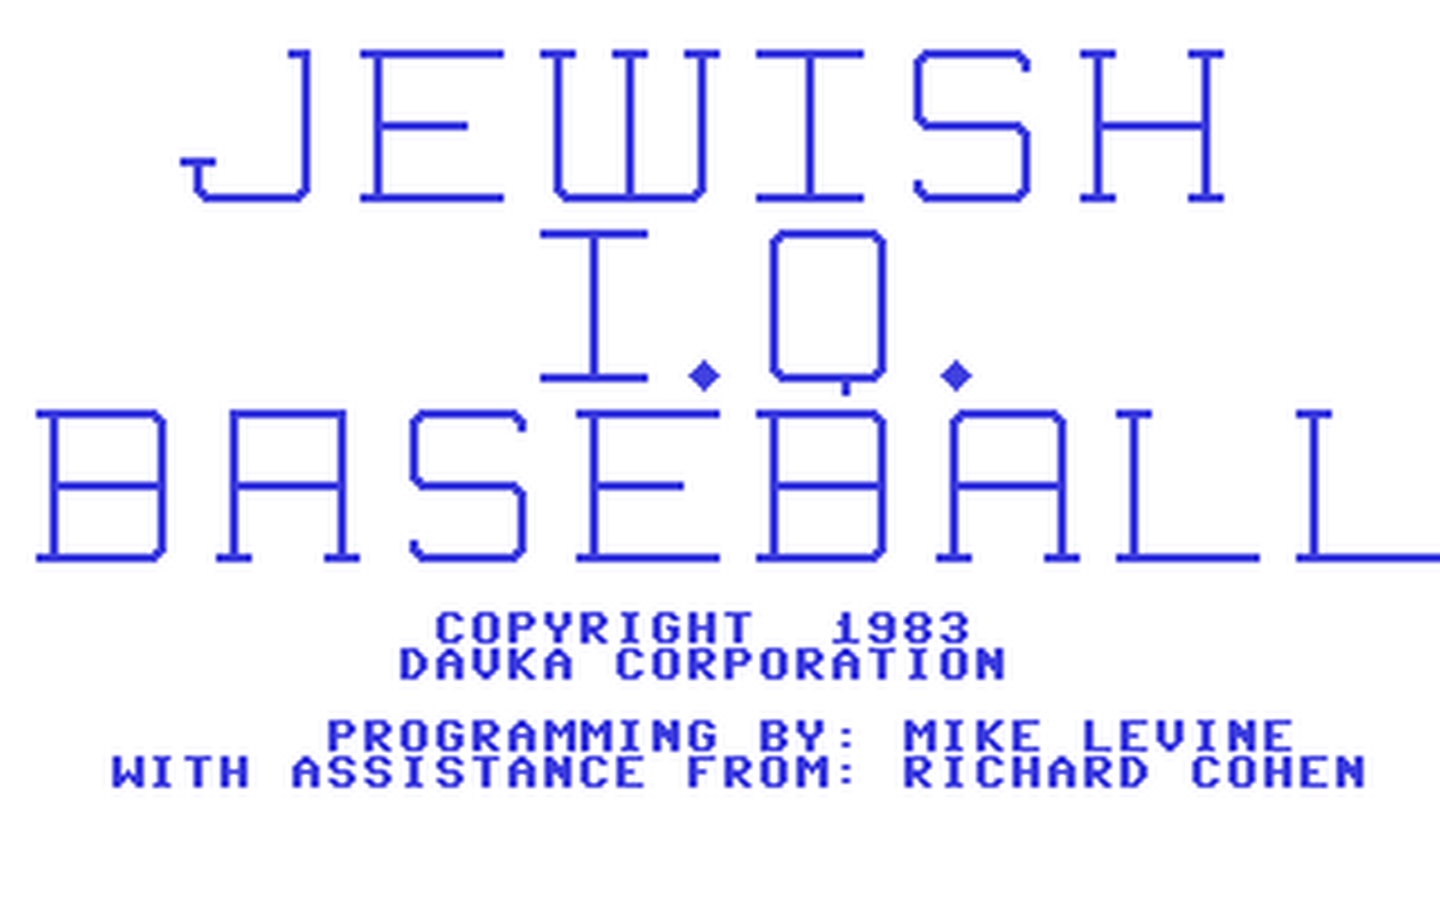 C64 GameBase Jewish_IQ_Baseball Davka_Corporation 1983